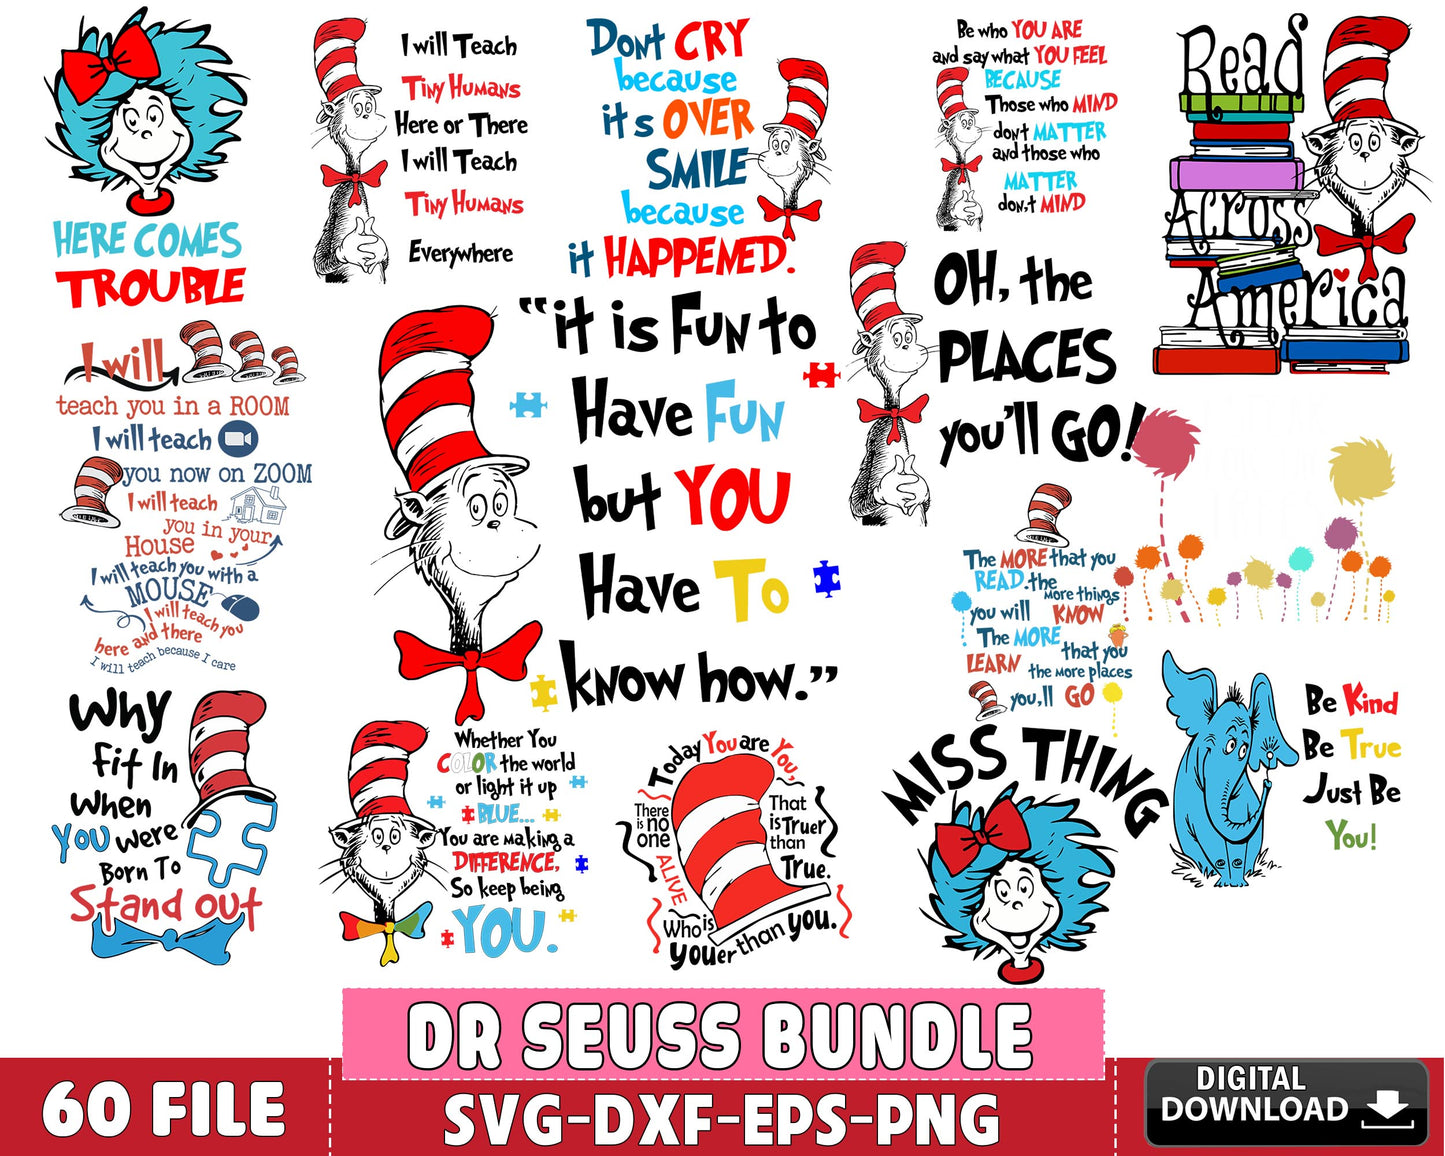 Dr Seuss Bundle Svg, 60+ Files Dr Seuss Svg Dxf Eps Png, For Cricut, S 